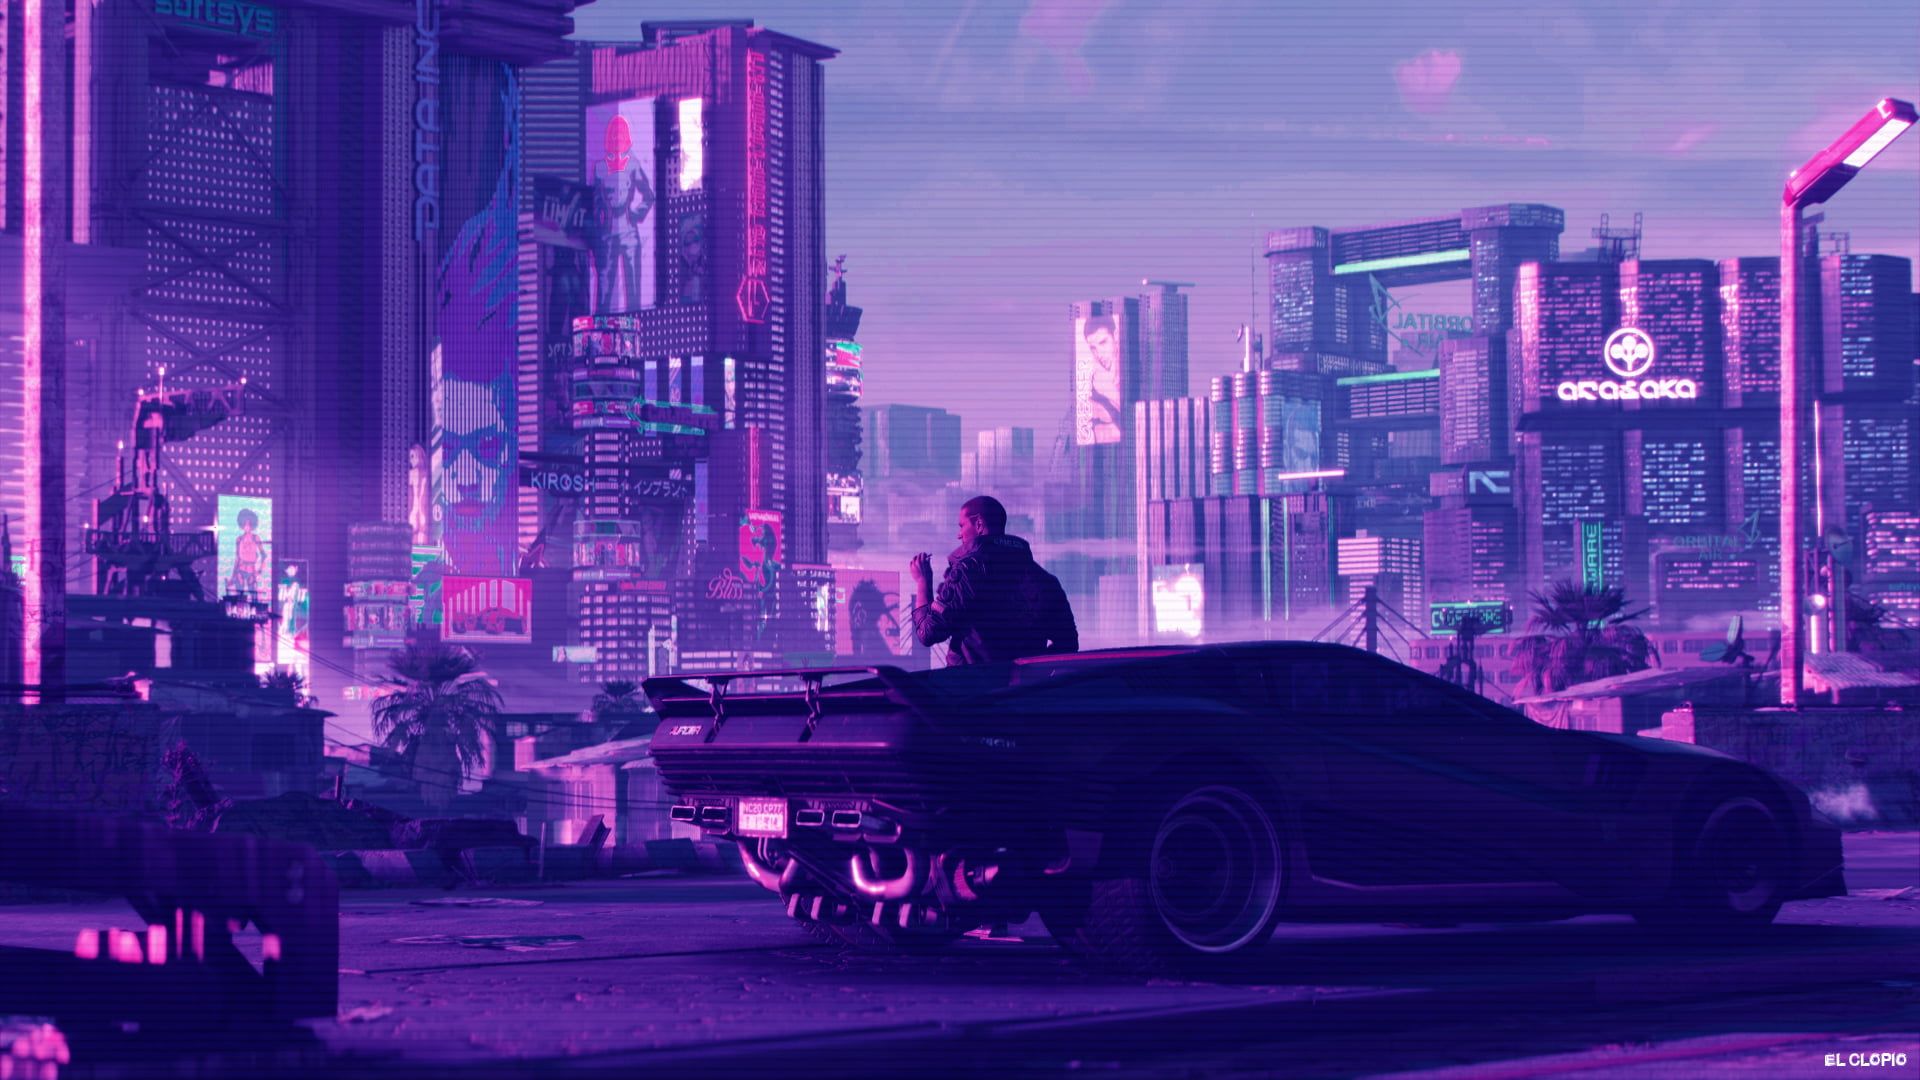 Cyberpunk 2077 #synthwave #car digital art #vehicle futuristic city P # wallpaper #hdwallpaper #desktop. Futuristic city, Cyberpunk City wallpaper